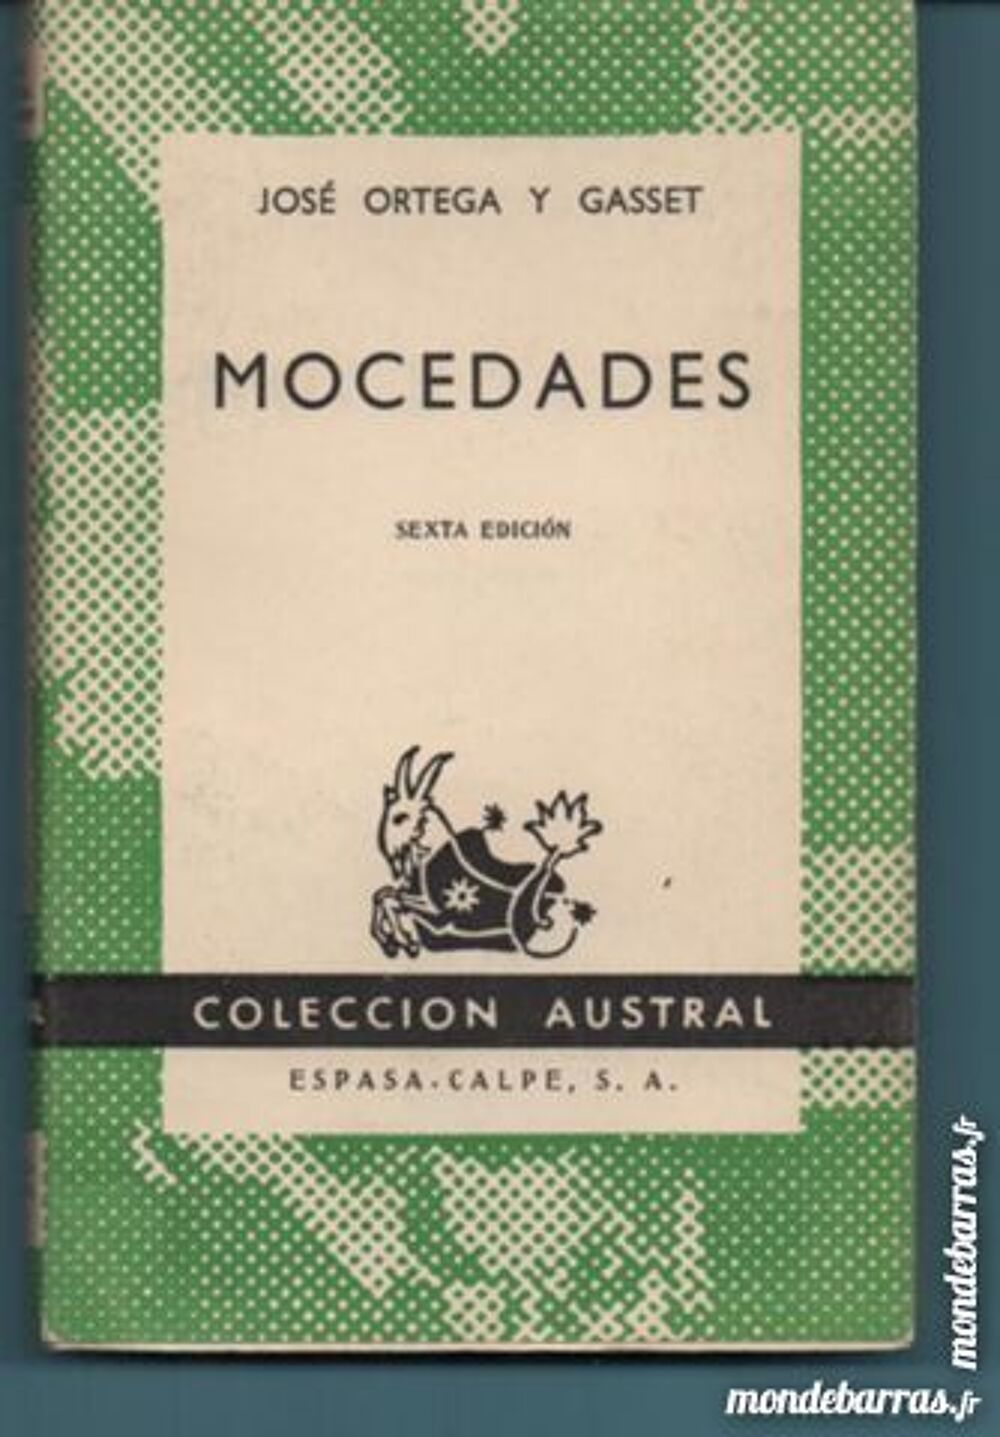 Jose Ortega y Gasset MOCEDADES (en espagnol) Livres et BD